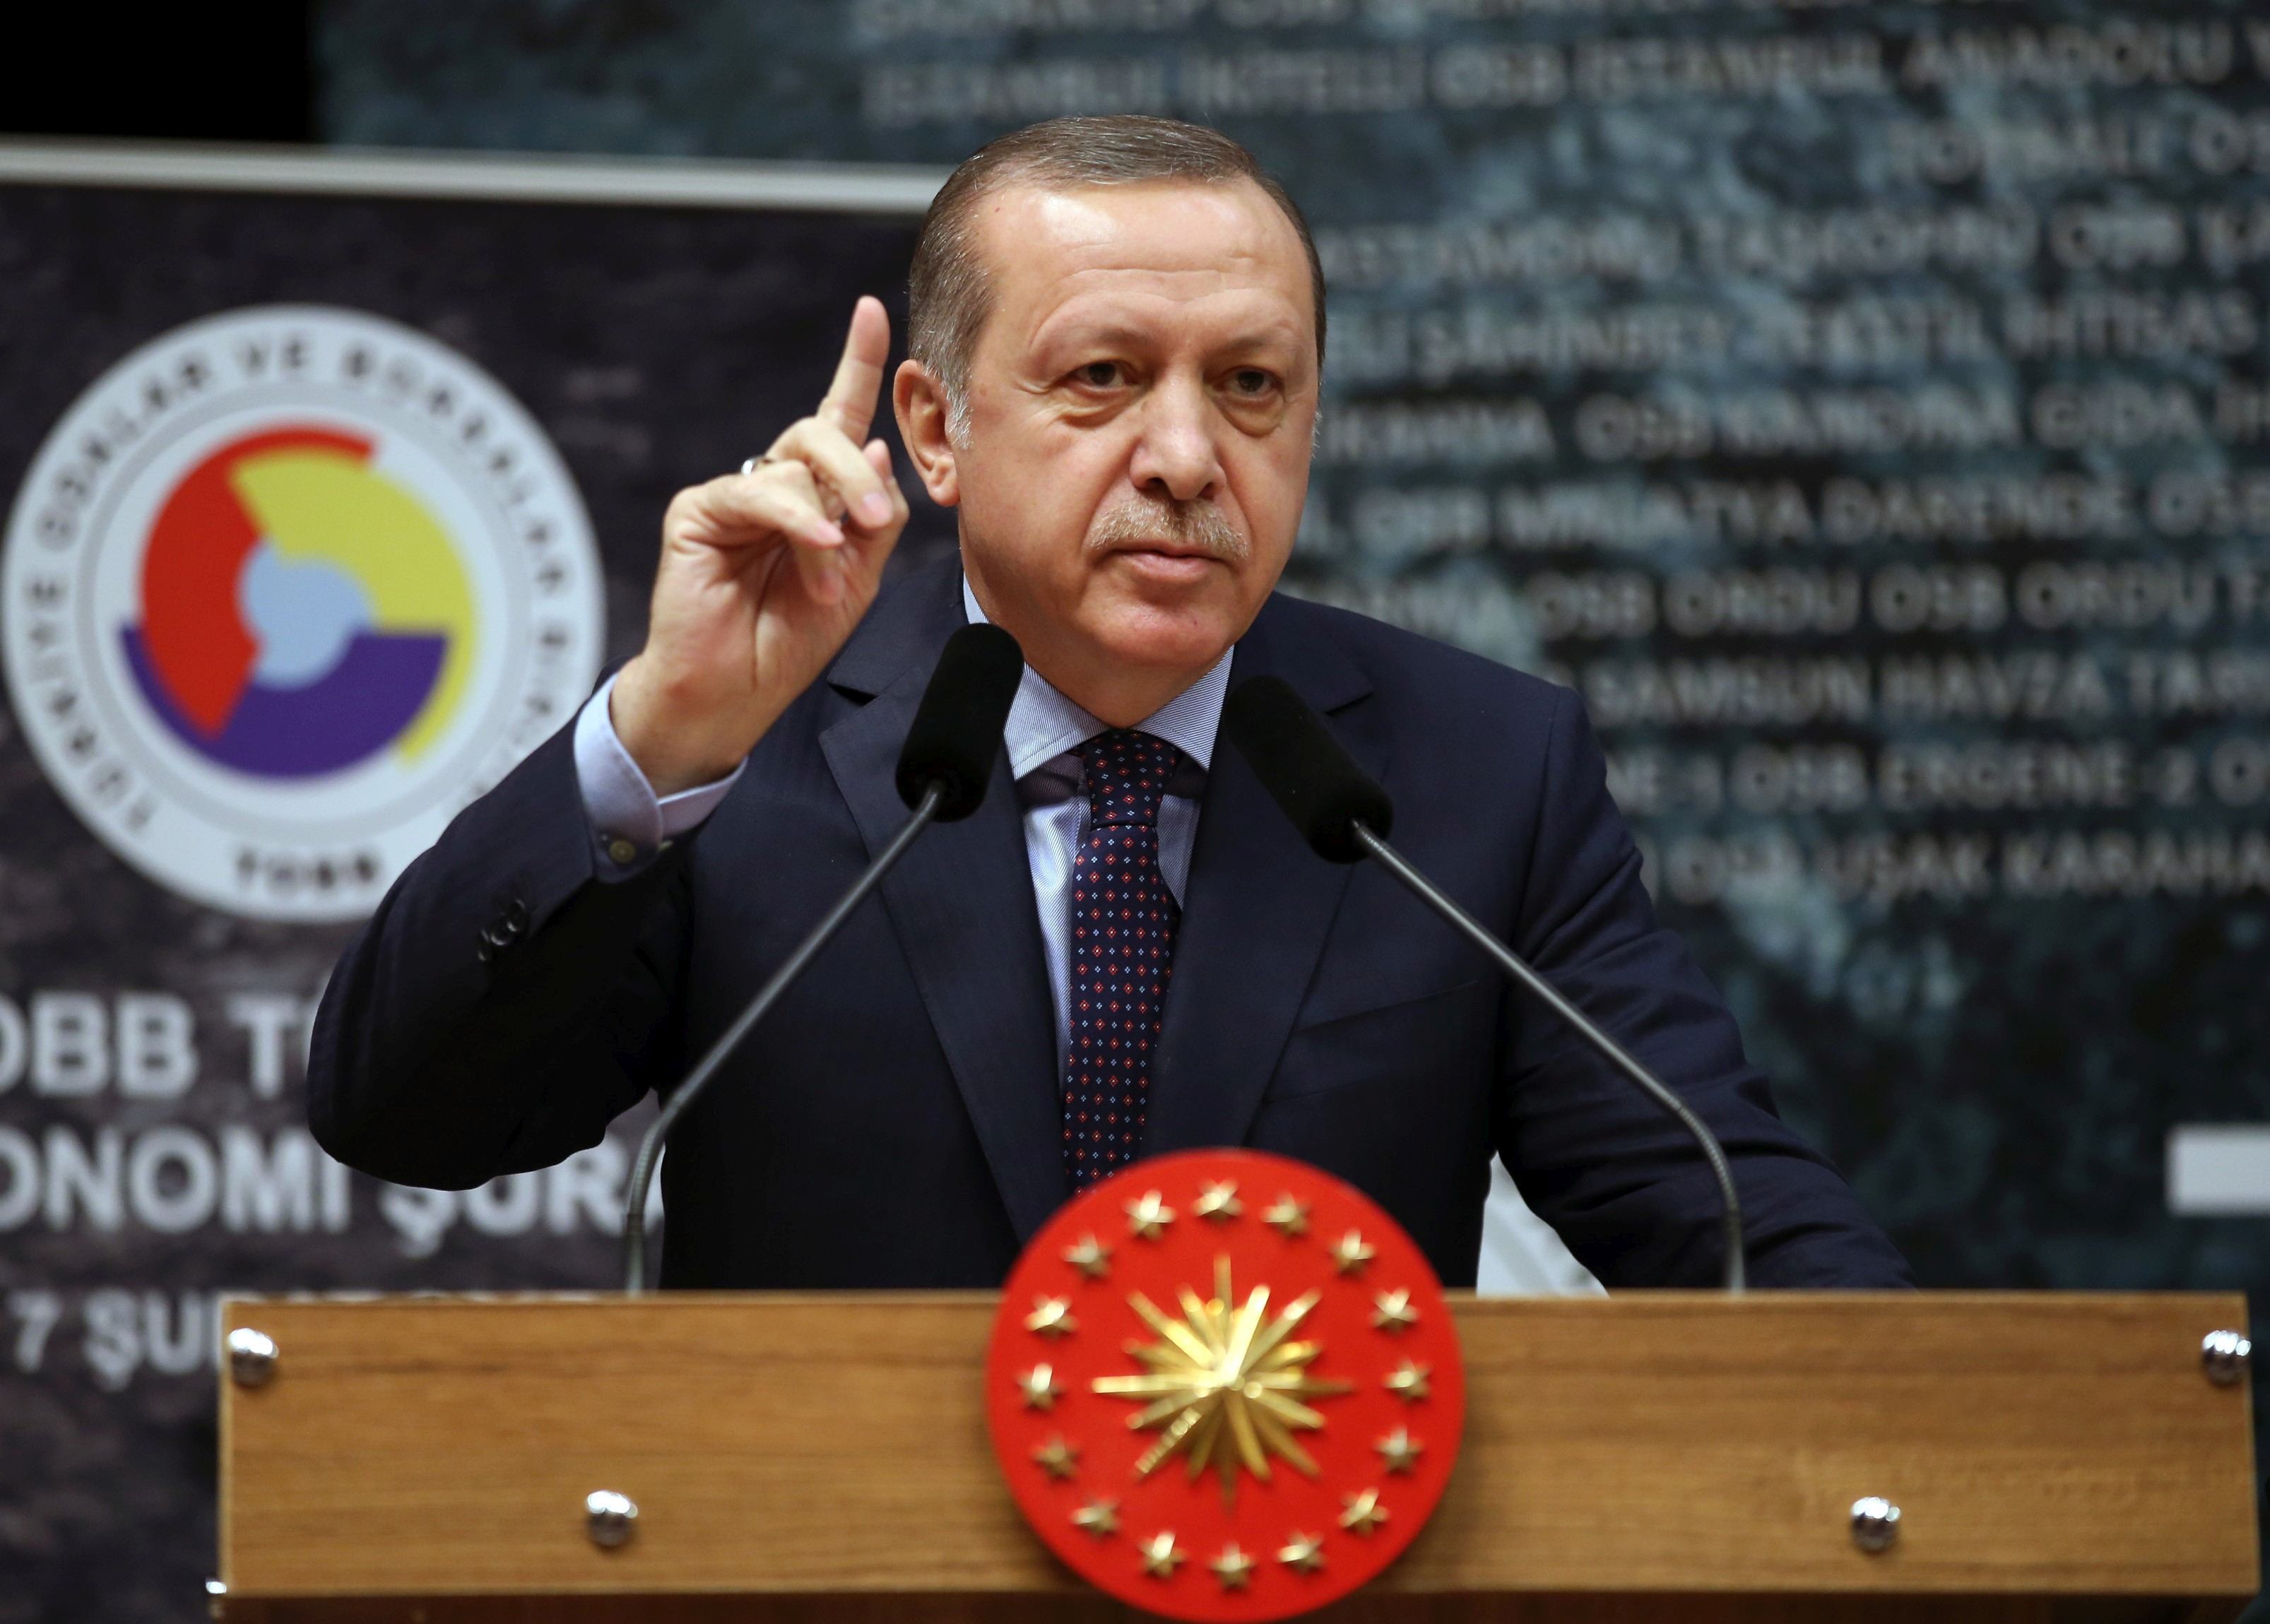 Turcia lui Erdogan ameninţă UE cu o nouă criză a refugiaţilor şi pune sub semnul îndoielii suveranitatea unor insule greceşti